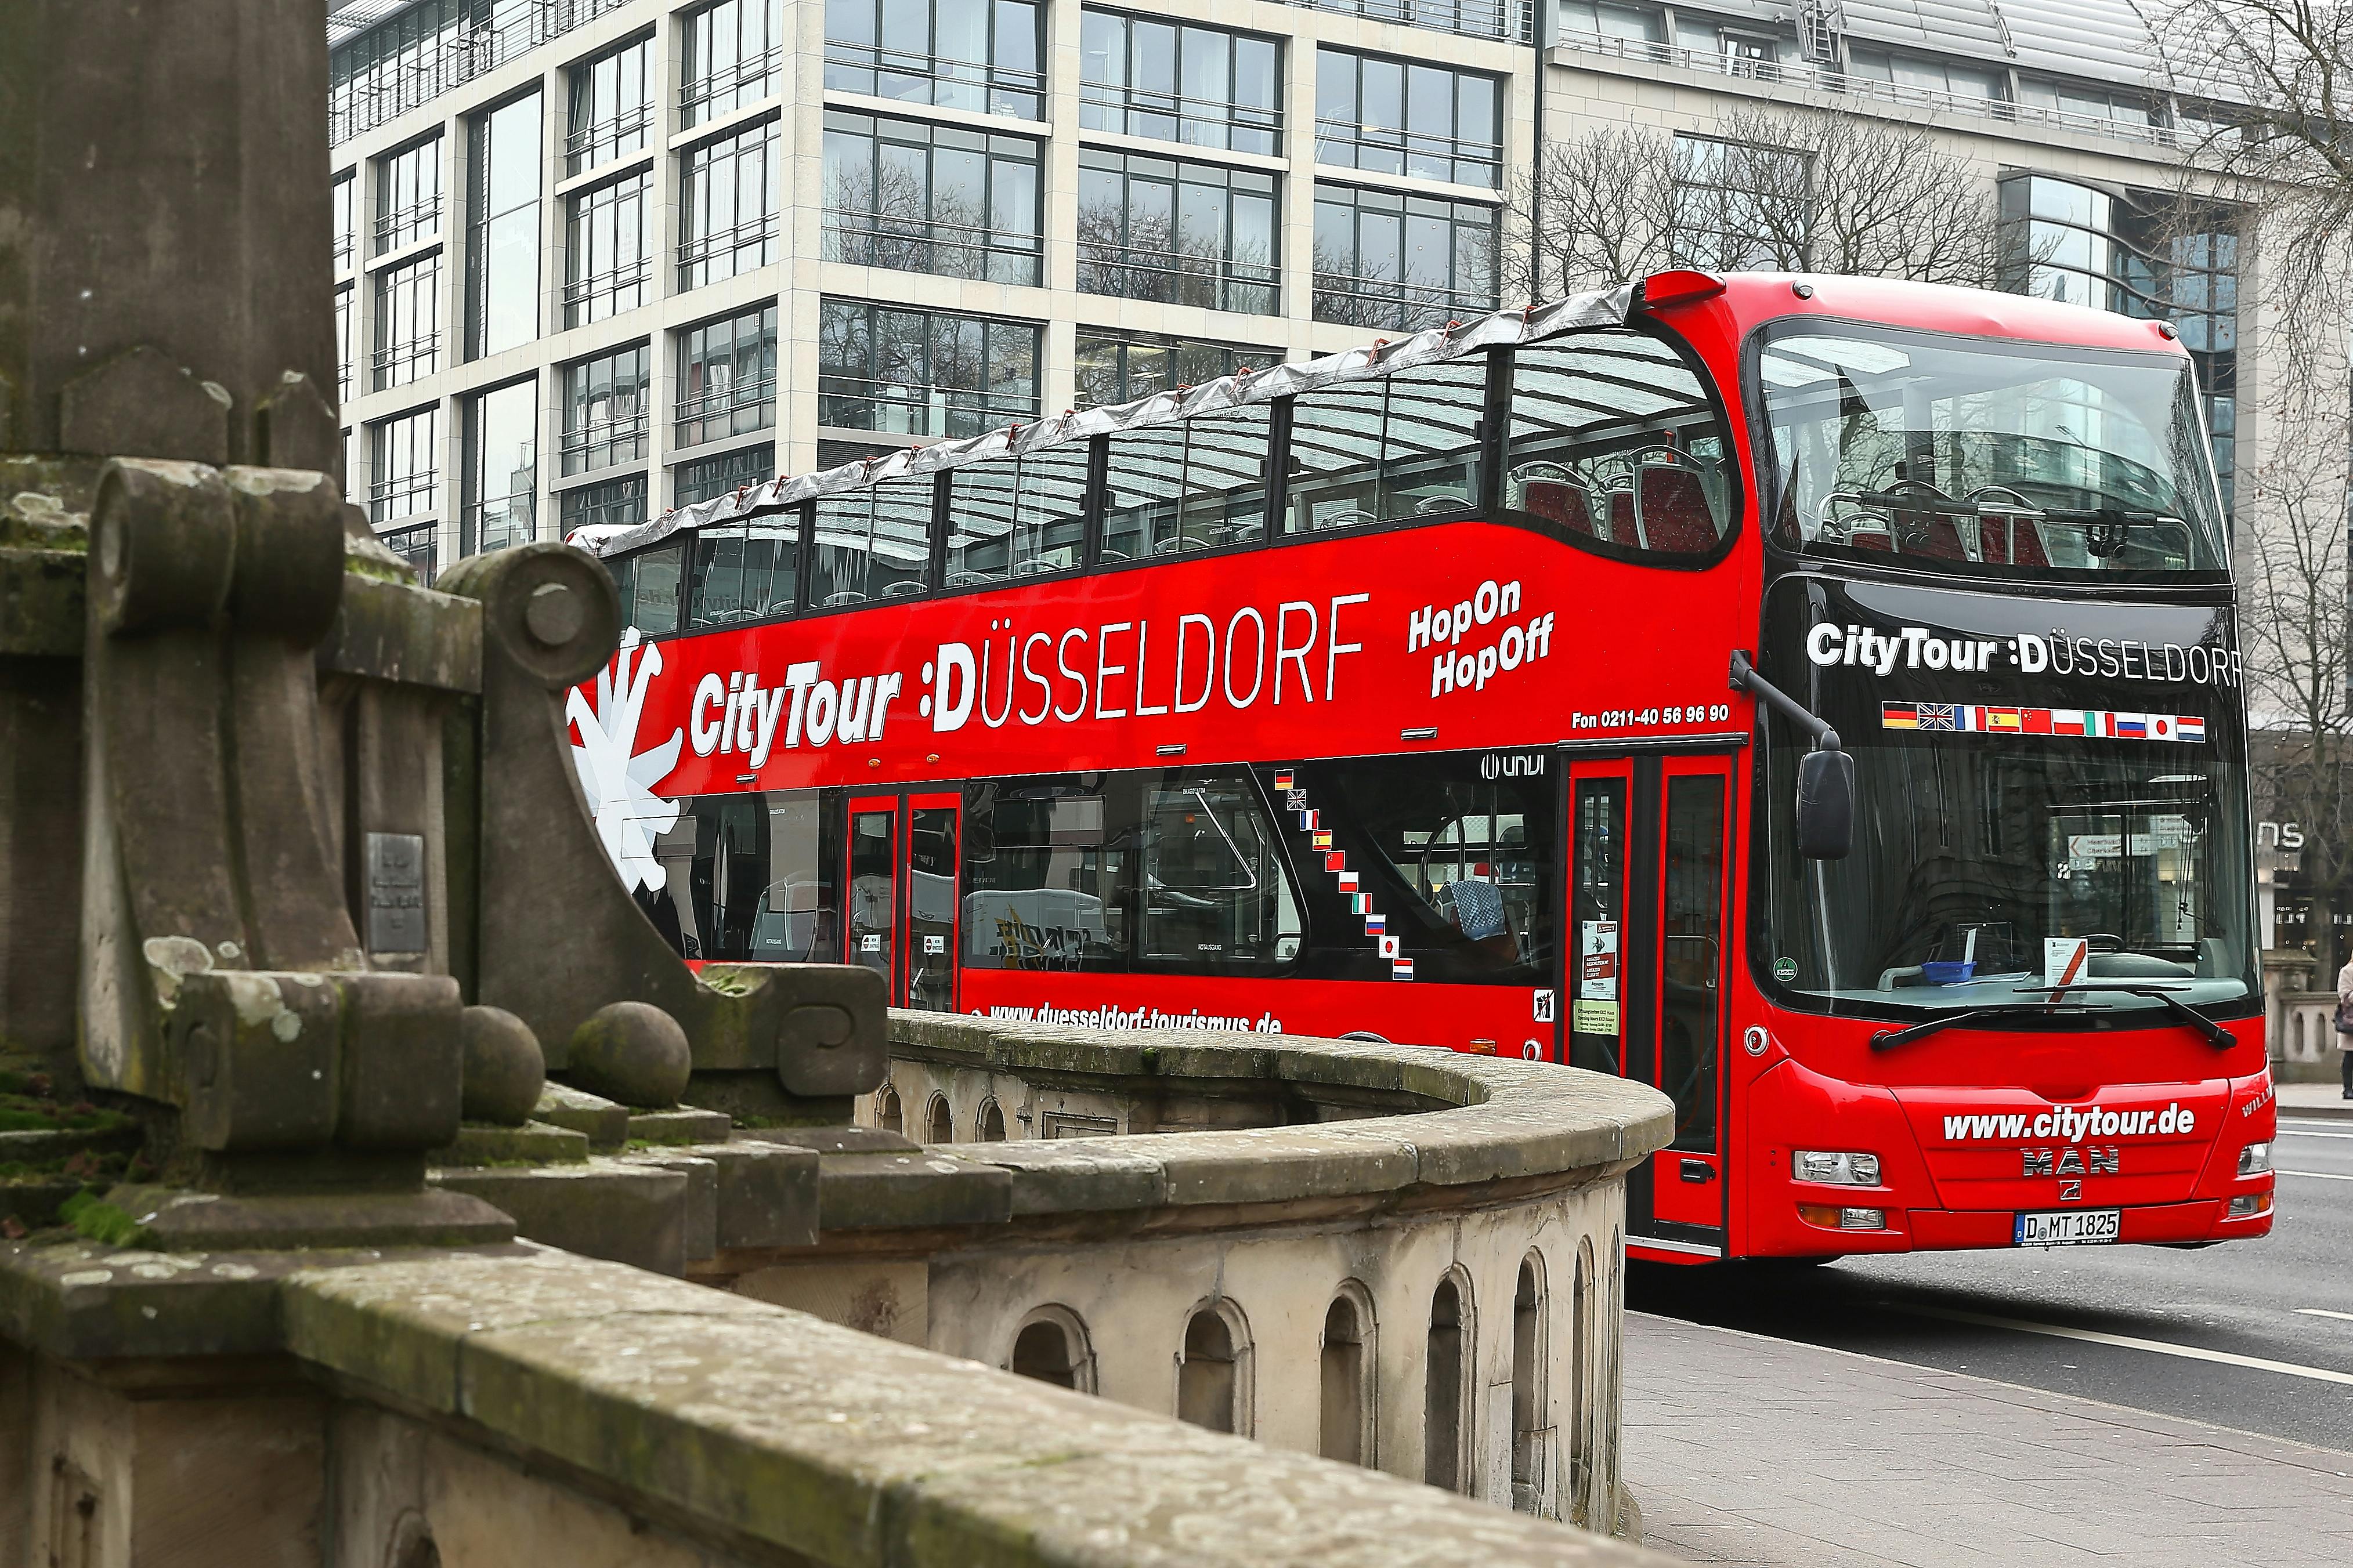 24 hour Düsseldorf hop on off bus tour Musement